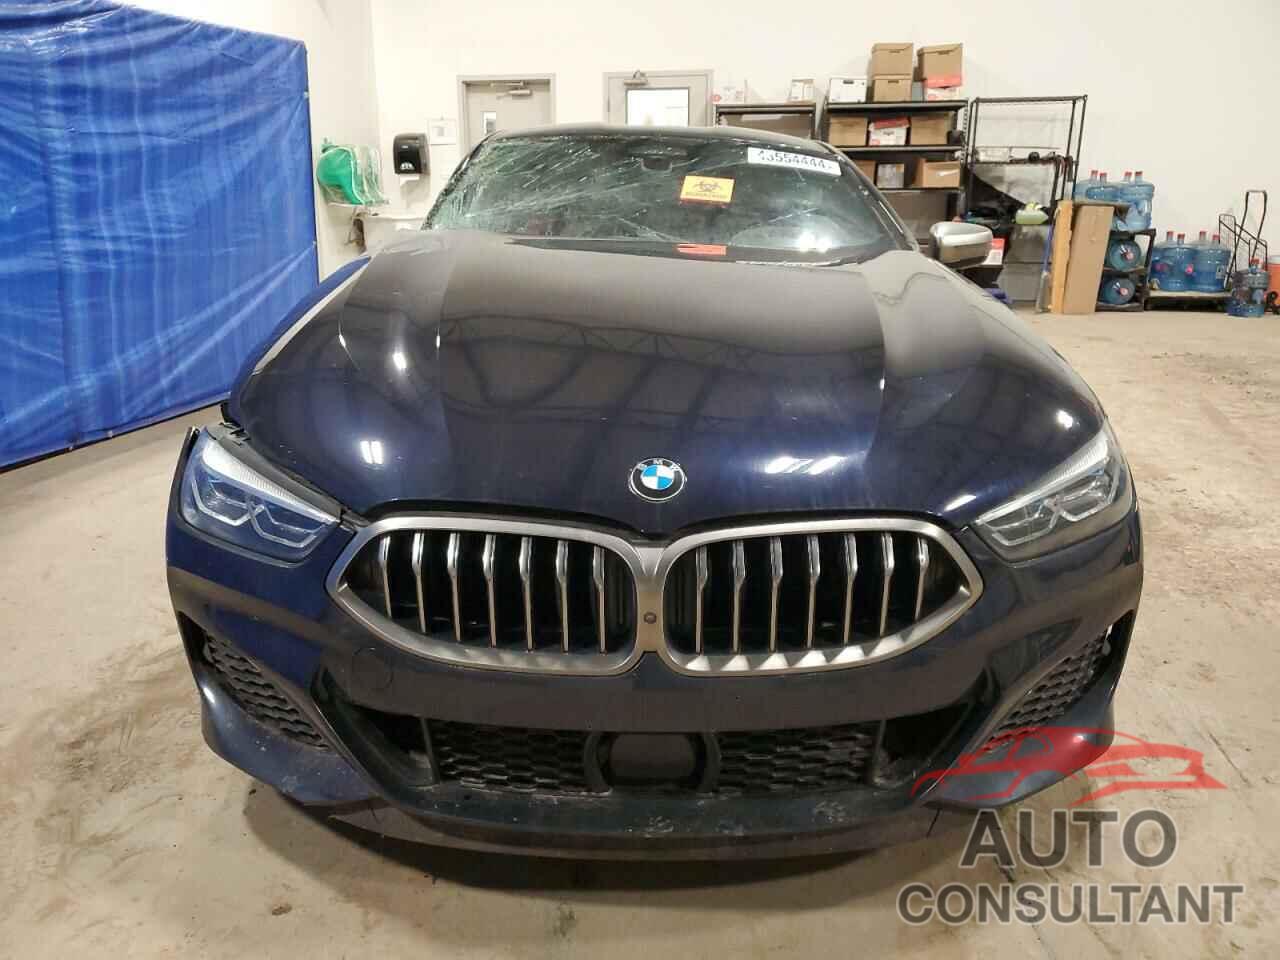 BMW M8 2019 - WBABC4C54KBJ35629